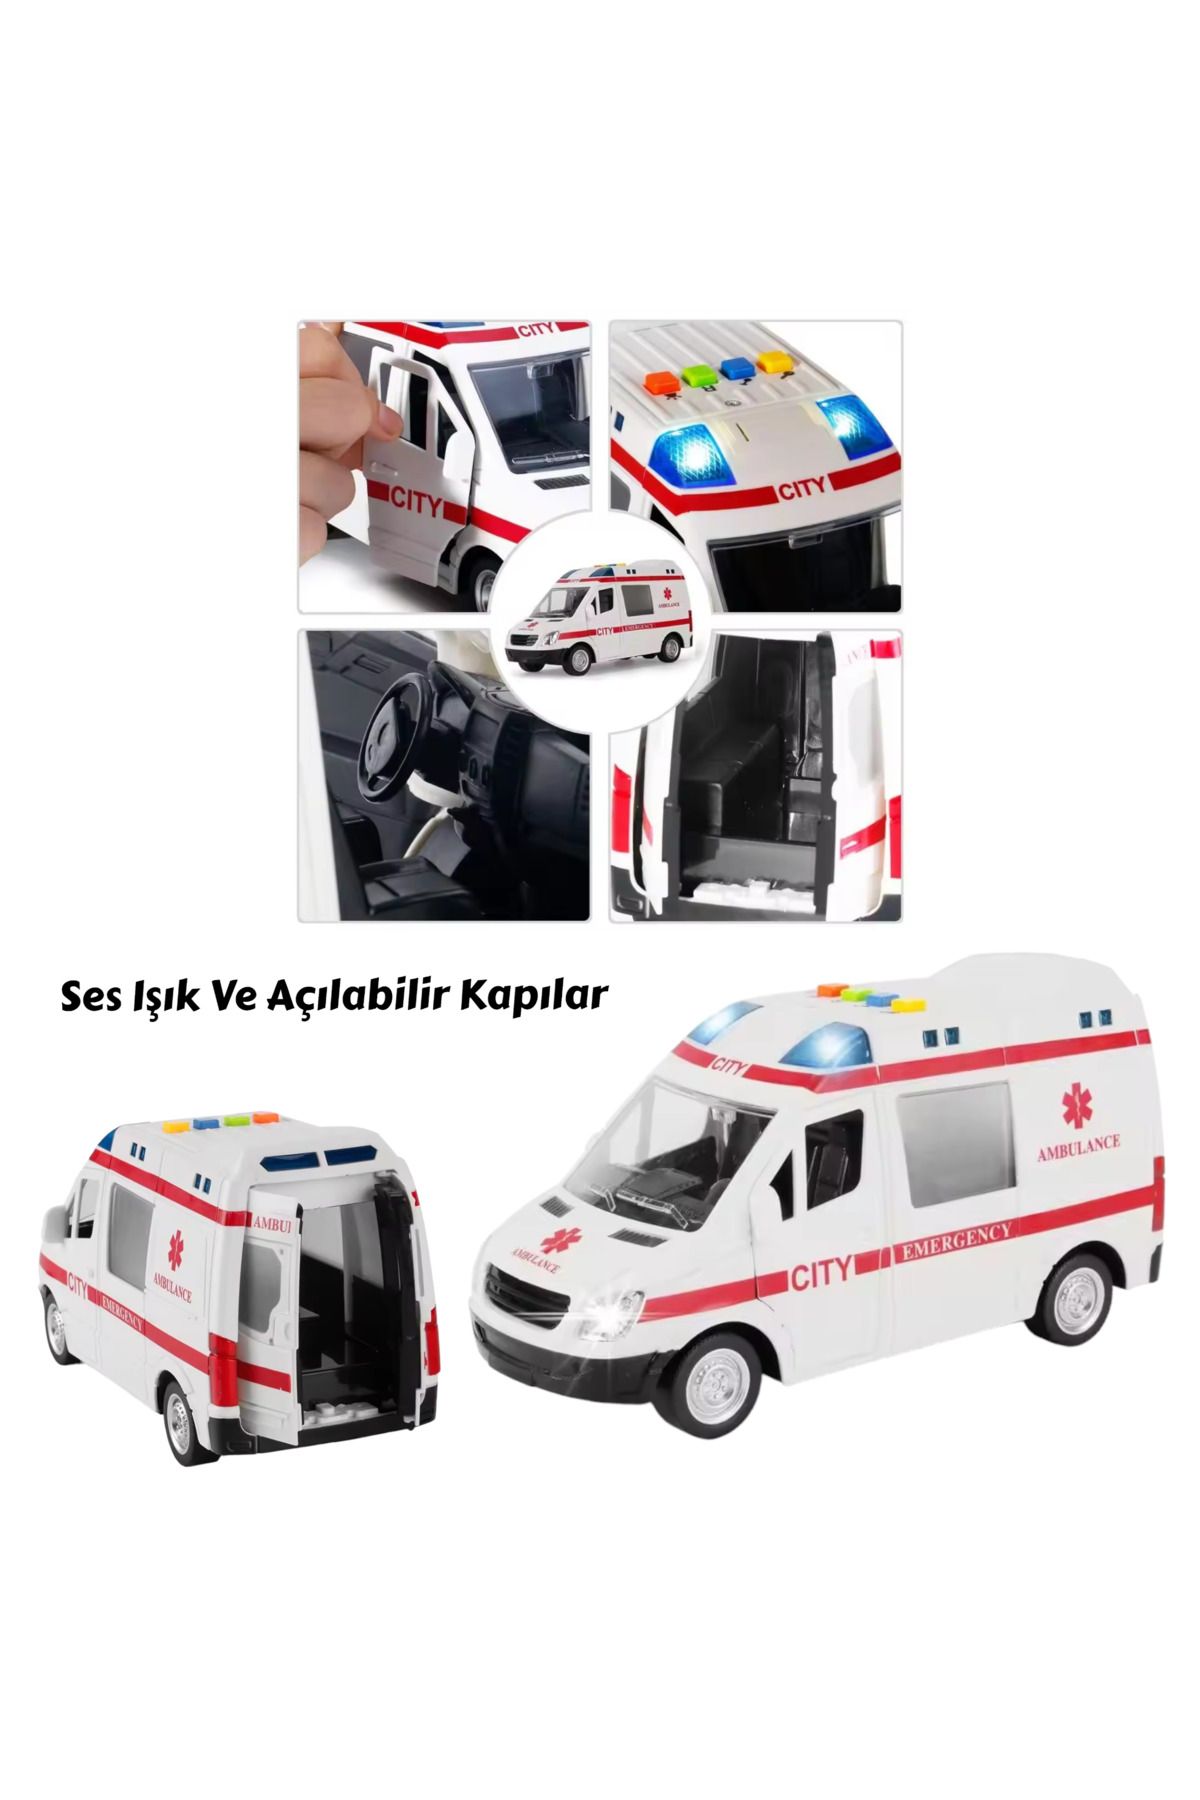 YILDIRIM OYUNCAK Kaliteli Plastik Gövde 4 Farklı Ses Sürtmeli Sesli Işıklı 22 cm Ambulans Arabası Açılabilir Kapılar